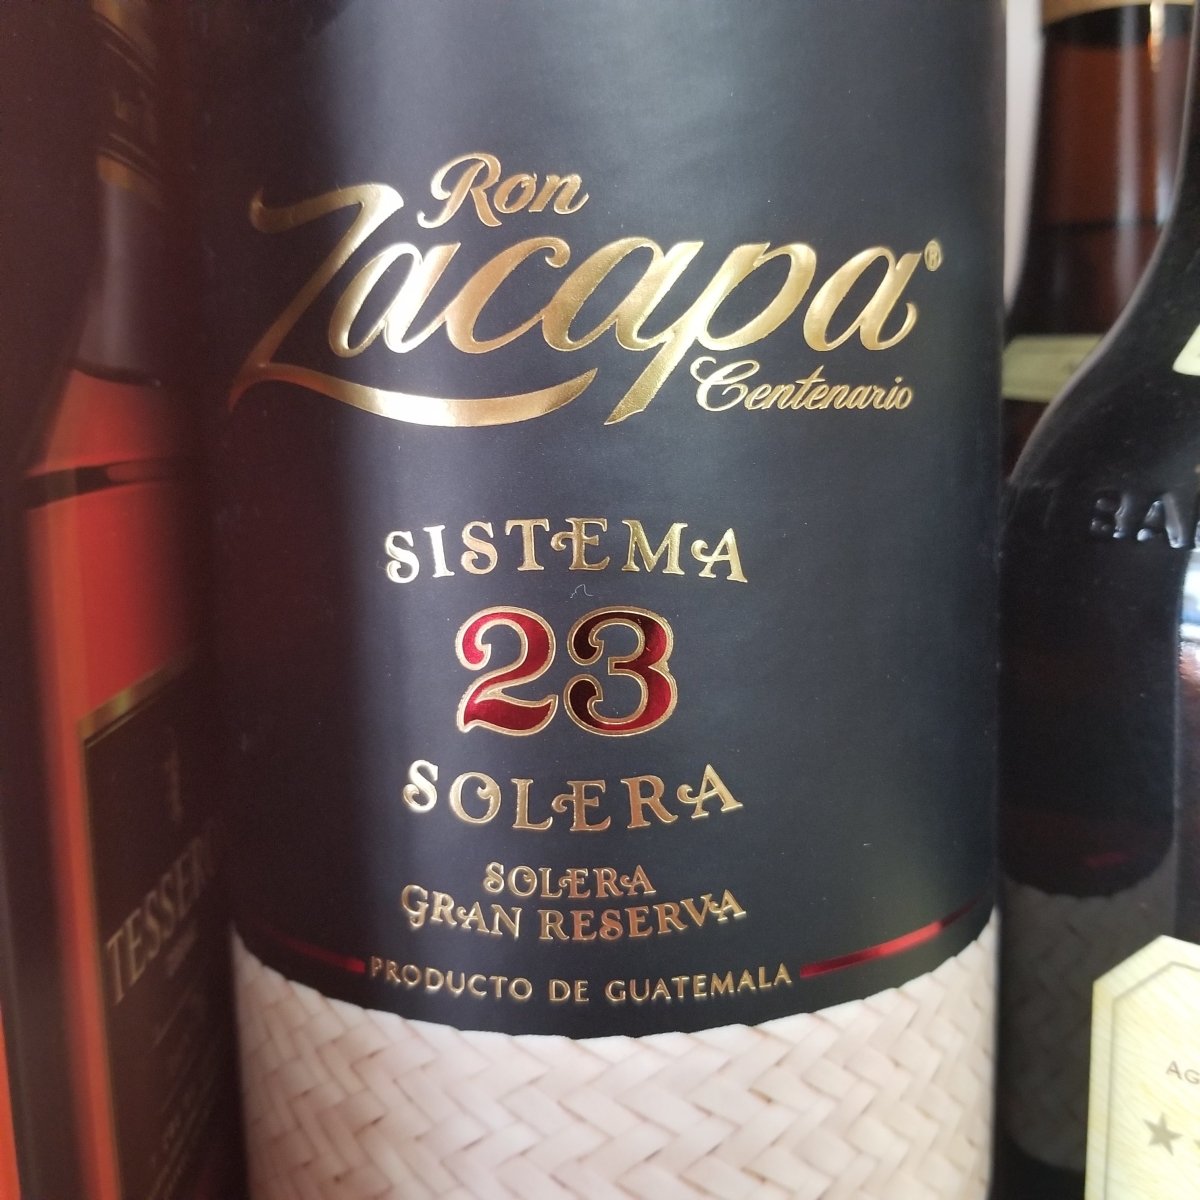 Product Detail  Ron Zacapa 23 Year Old Centenario Sistema Solera Gran  Reserva Rum